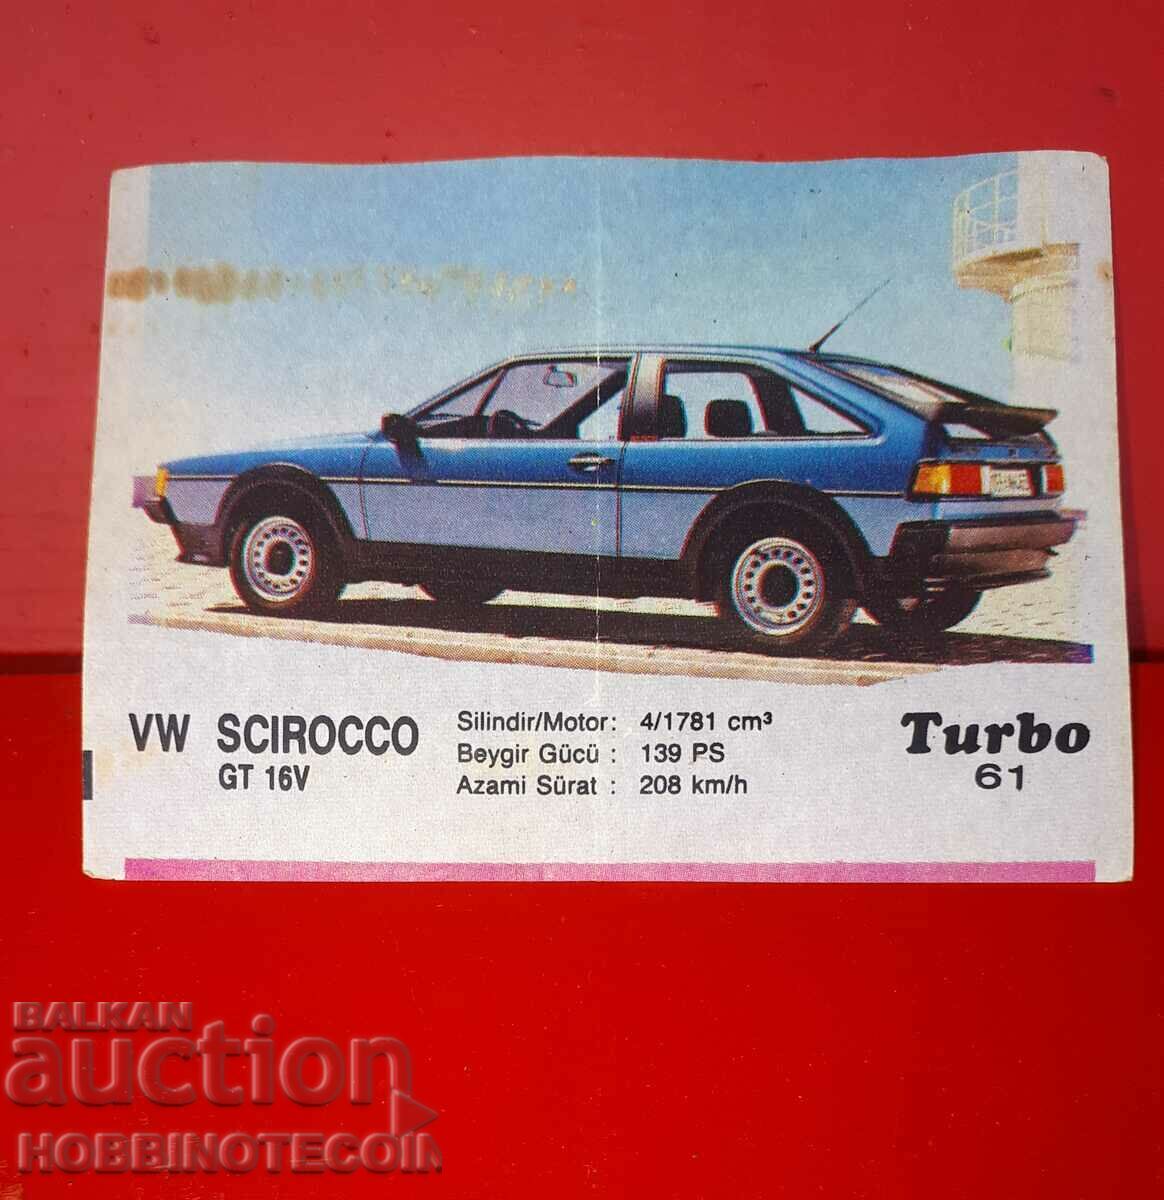 POZA TURBO TURBO N 61 VW SCIROCCO GT 16V